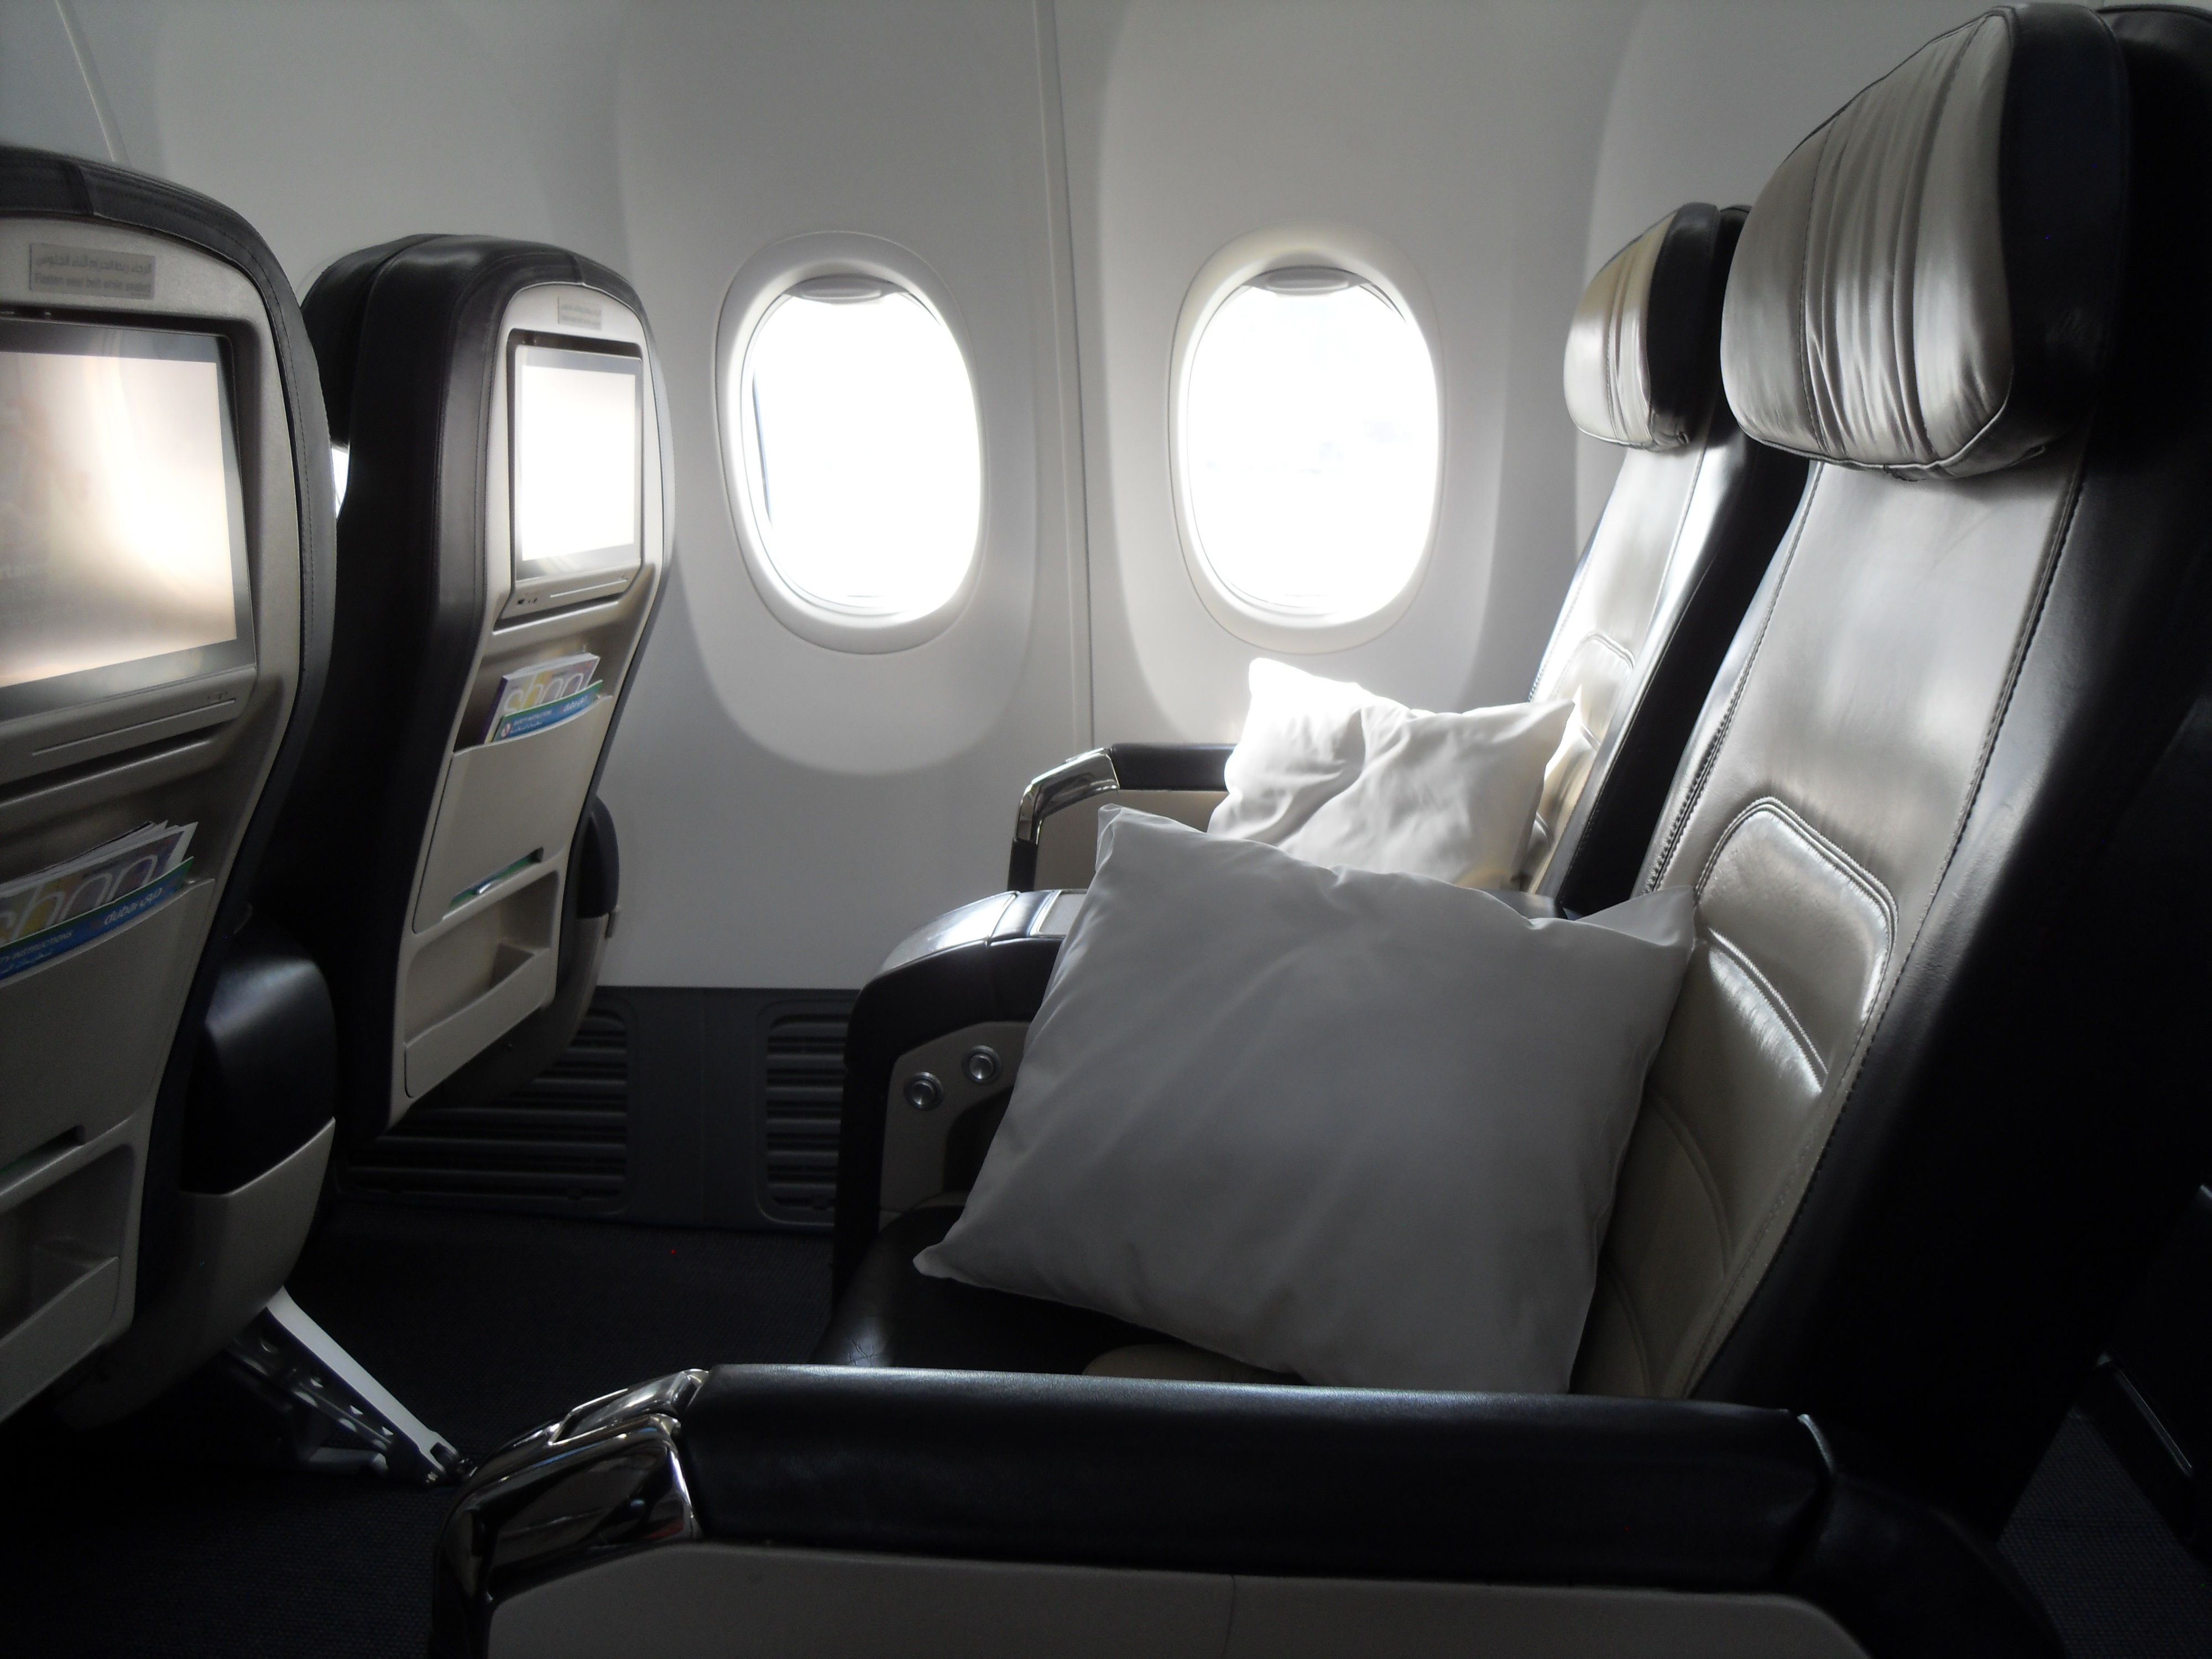 Ποια είναι η πιο ασφαλής θέση σε ένα αεροπλάνο;